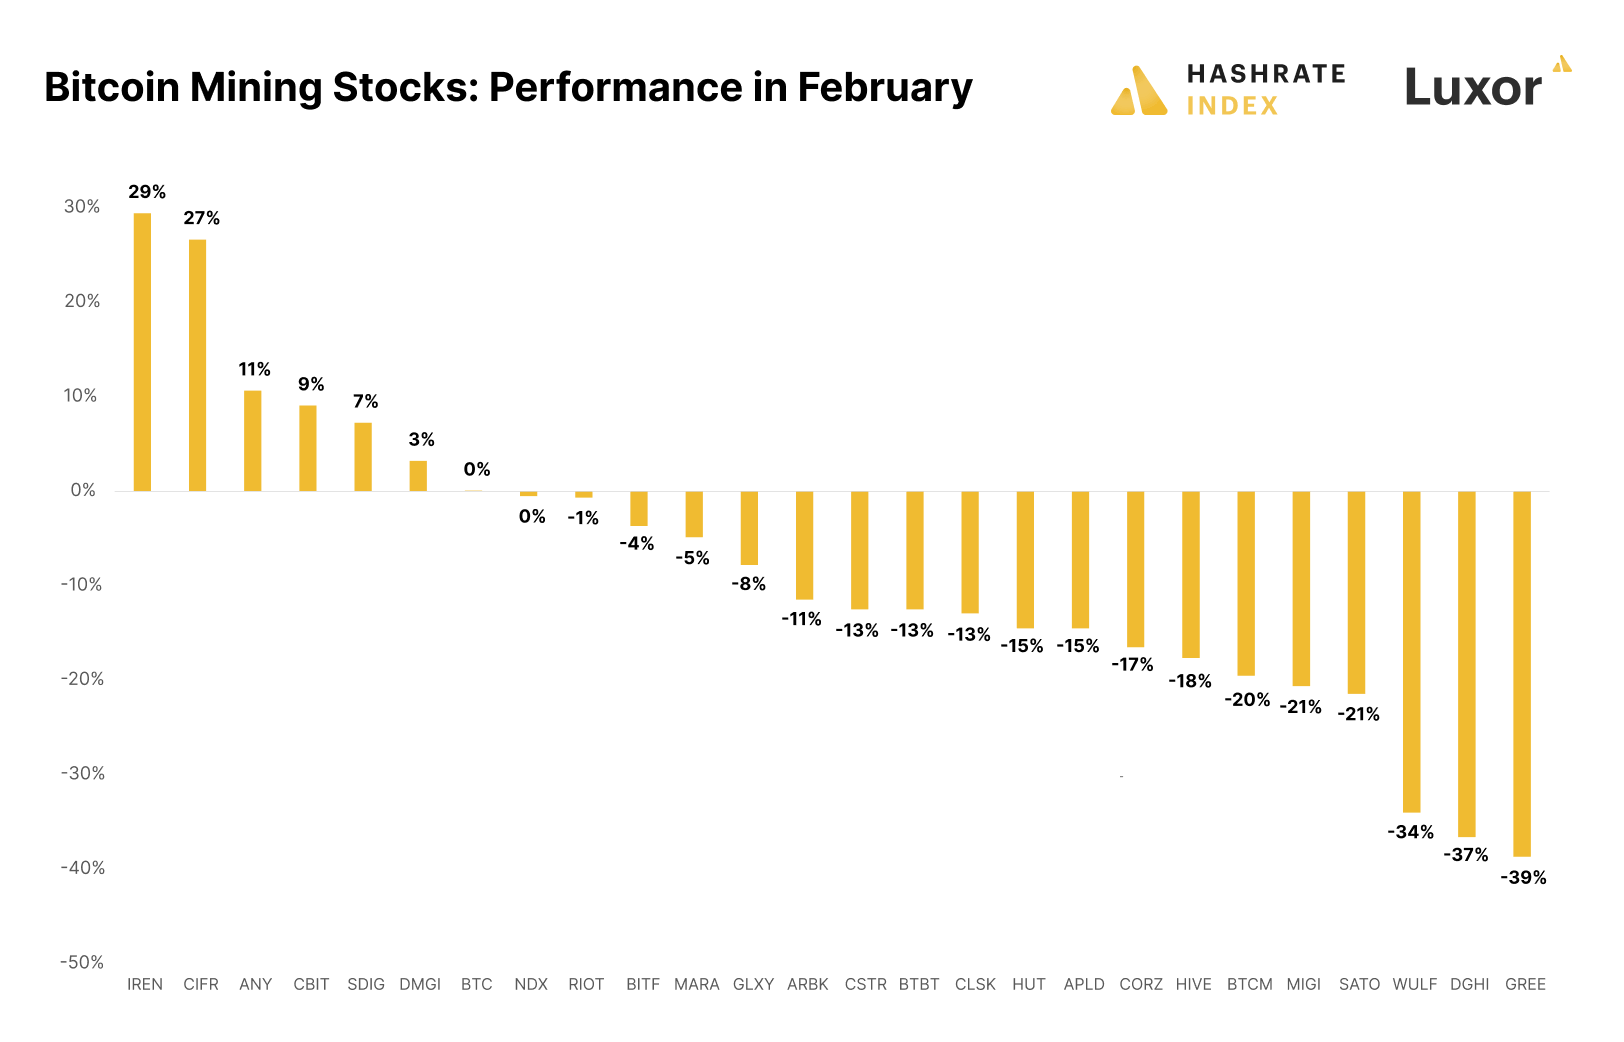 Hiệu suất cổ phiếu khai thác bitcoin trong tháng 2 (Nguồn: Hashrate Index)